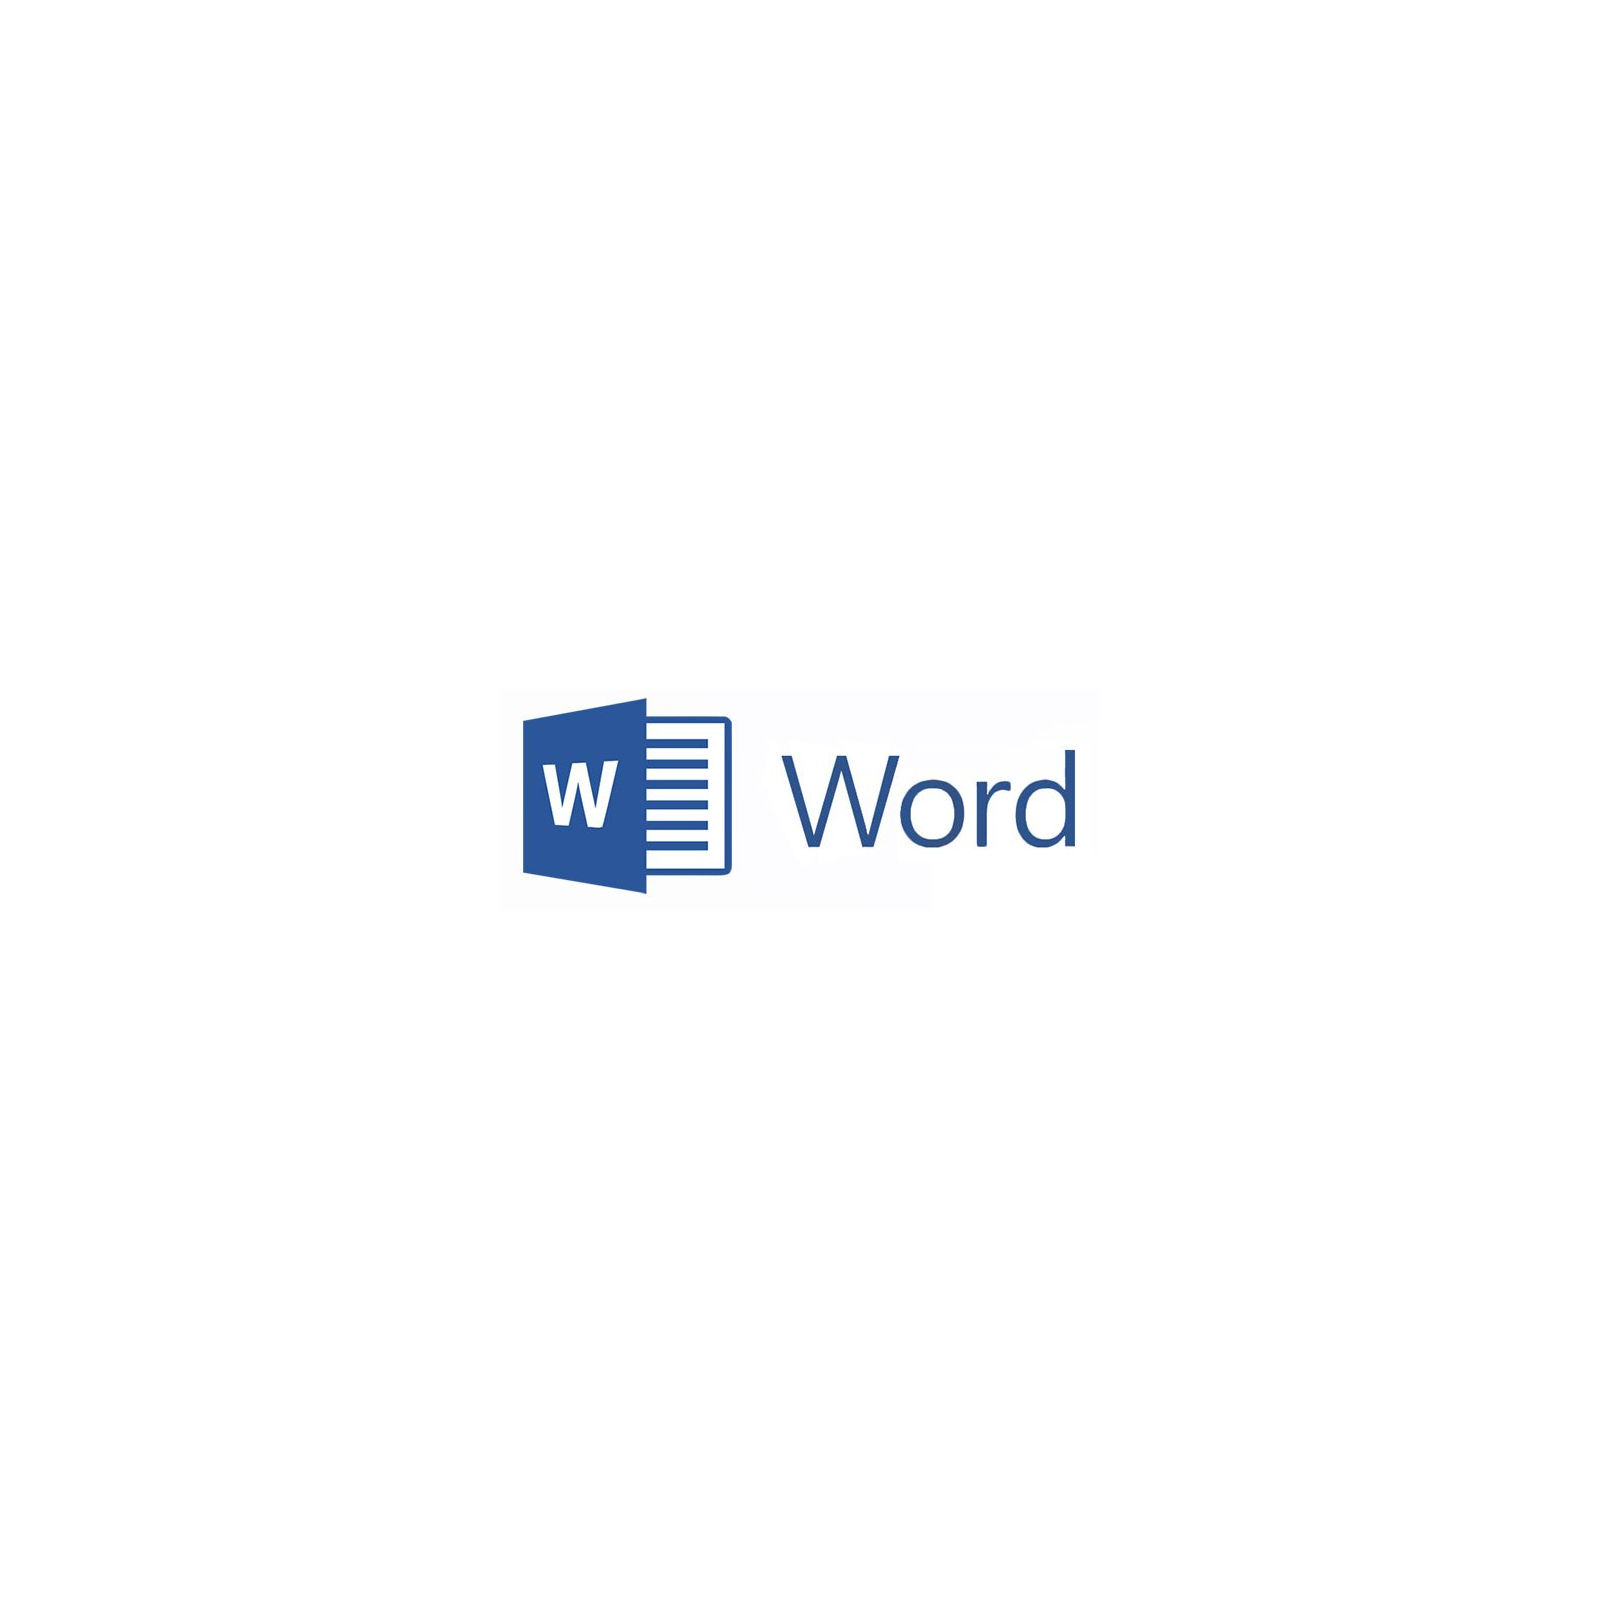 Программная продукция Microsoft Word 2016 UKR OLP NL Acdmc (059-09072)